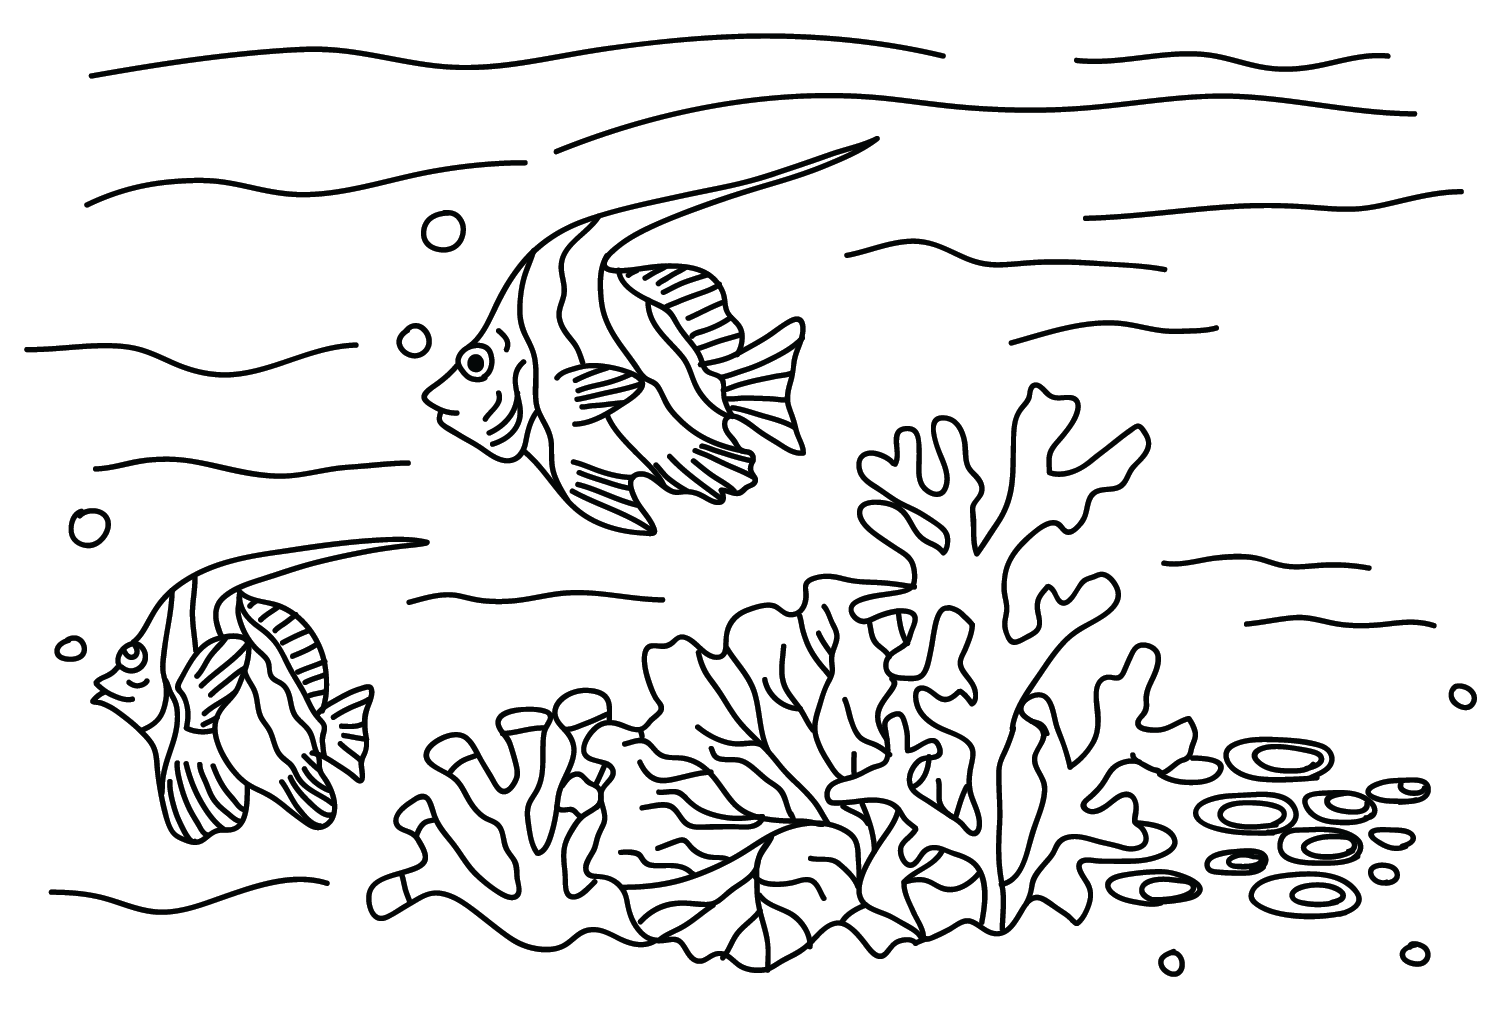 Рисунок вымпела коралловой рыбы из вымпела коралловой рыбы